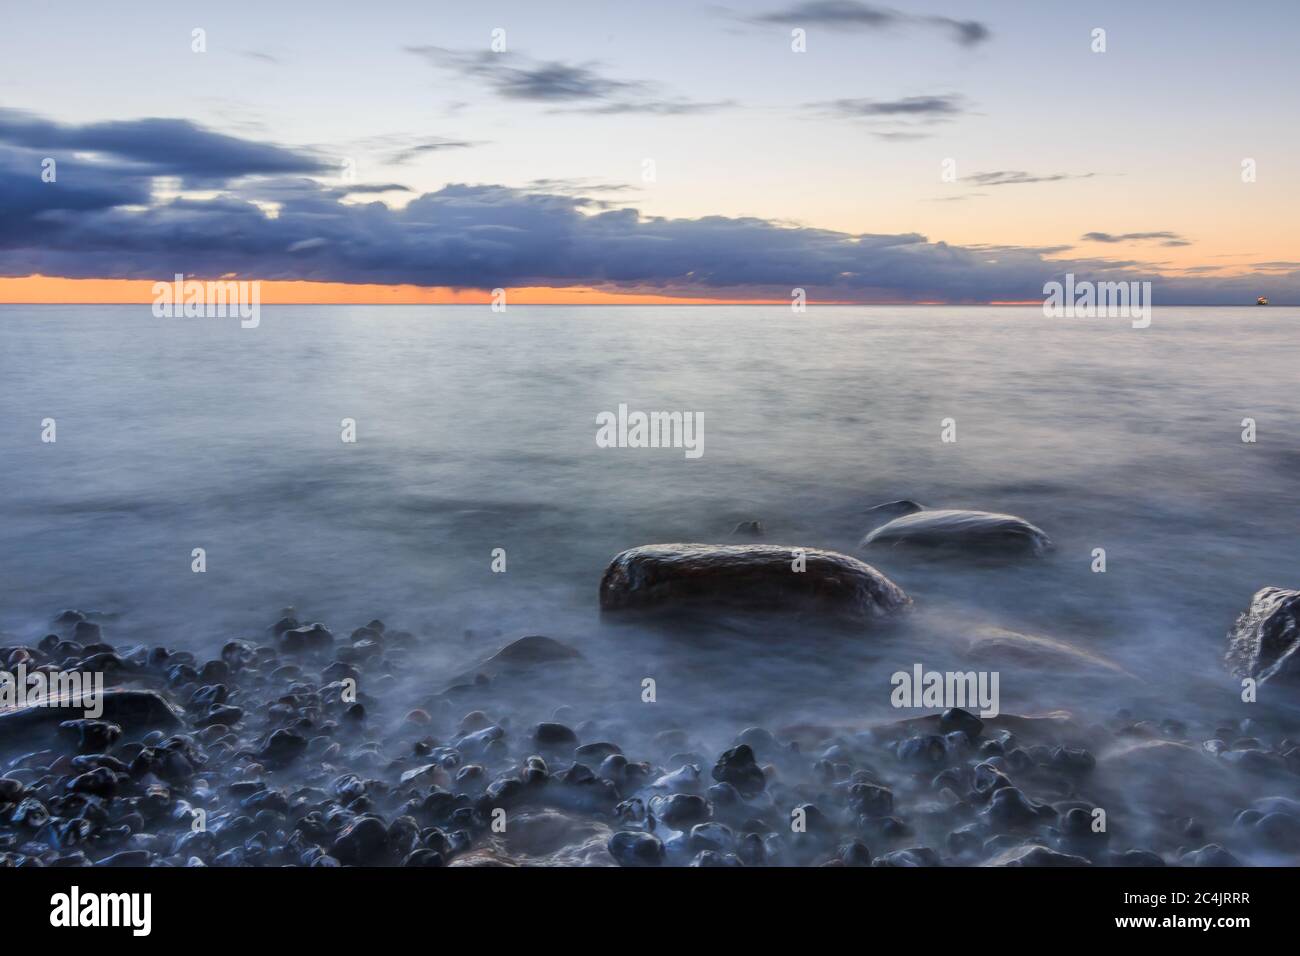 Mar Baltico sull'isola di Ruegen al mattino con alba. Spettacolari nuvole sull'orizzonte di colore rosso sulla costa sassosa. Pietre grandi in t Foto Stock